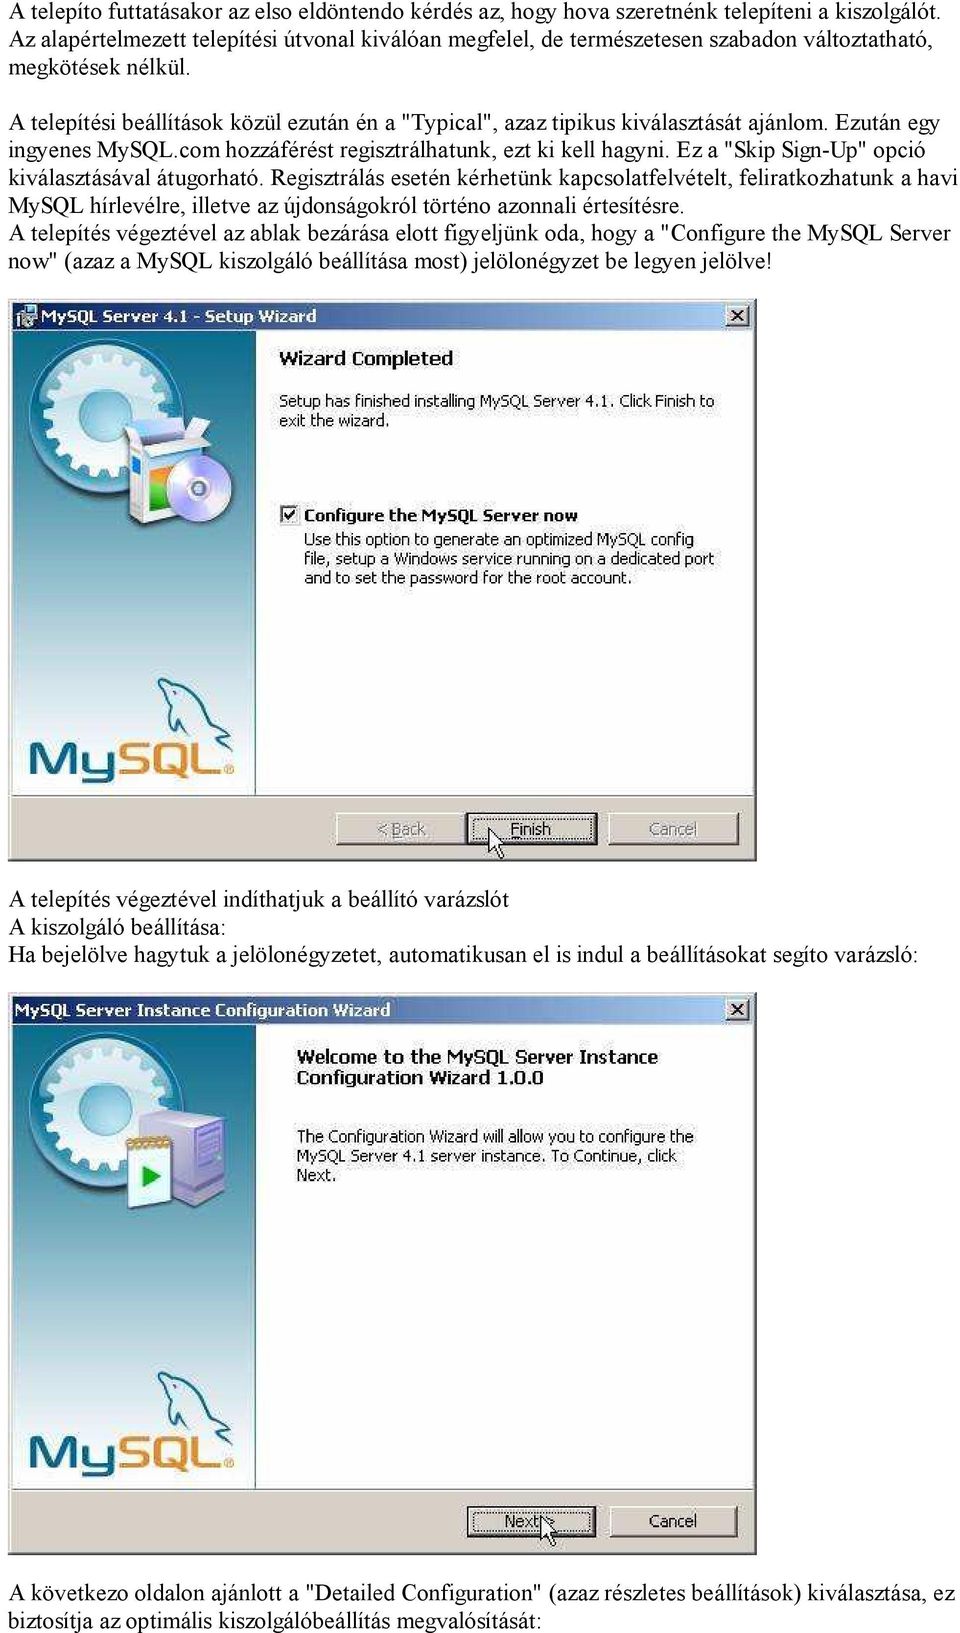 A telepítési beállítások közül ezután én a "Typical", azaz tipikus kiválasztását ajánlom. Ezután egy ingyenes MySQL.com hozzáférést regisztrálhatunk, ezt ki kell hagyni.